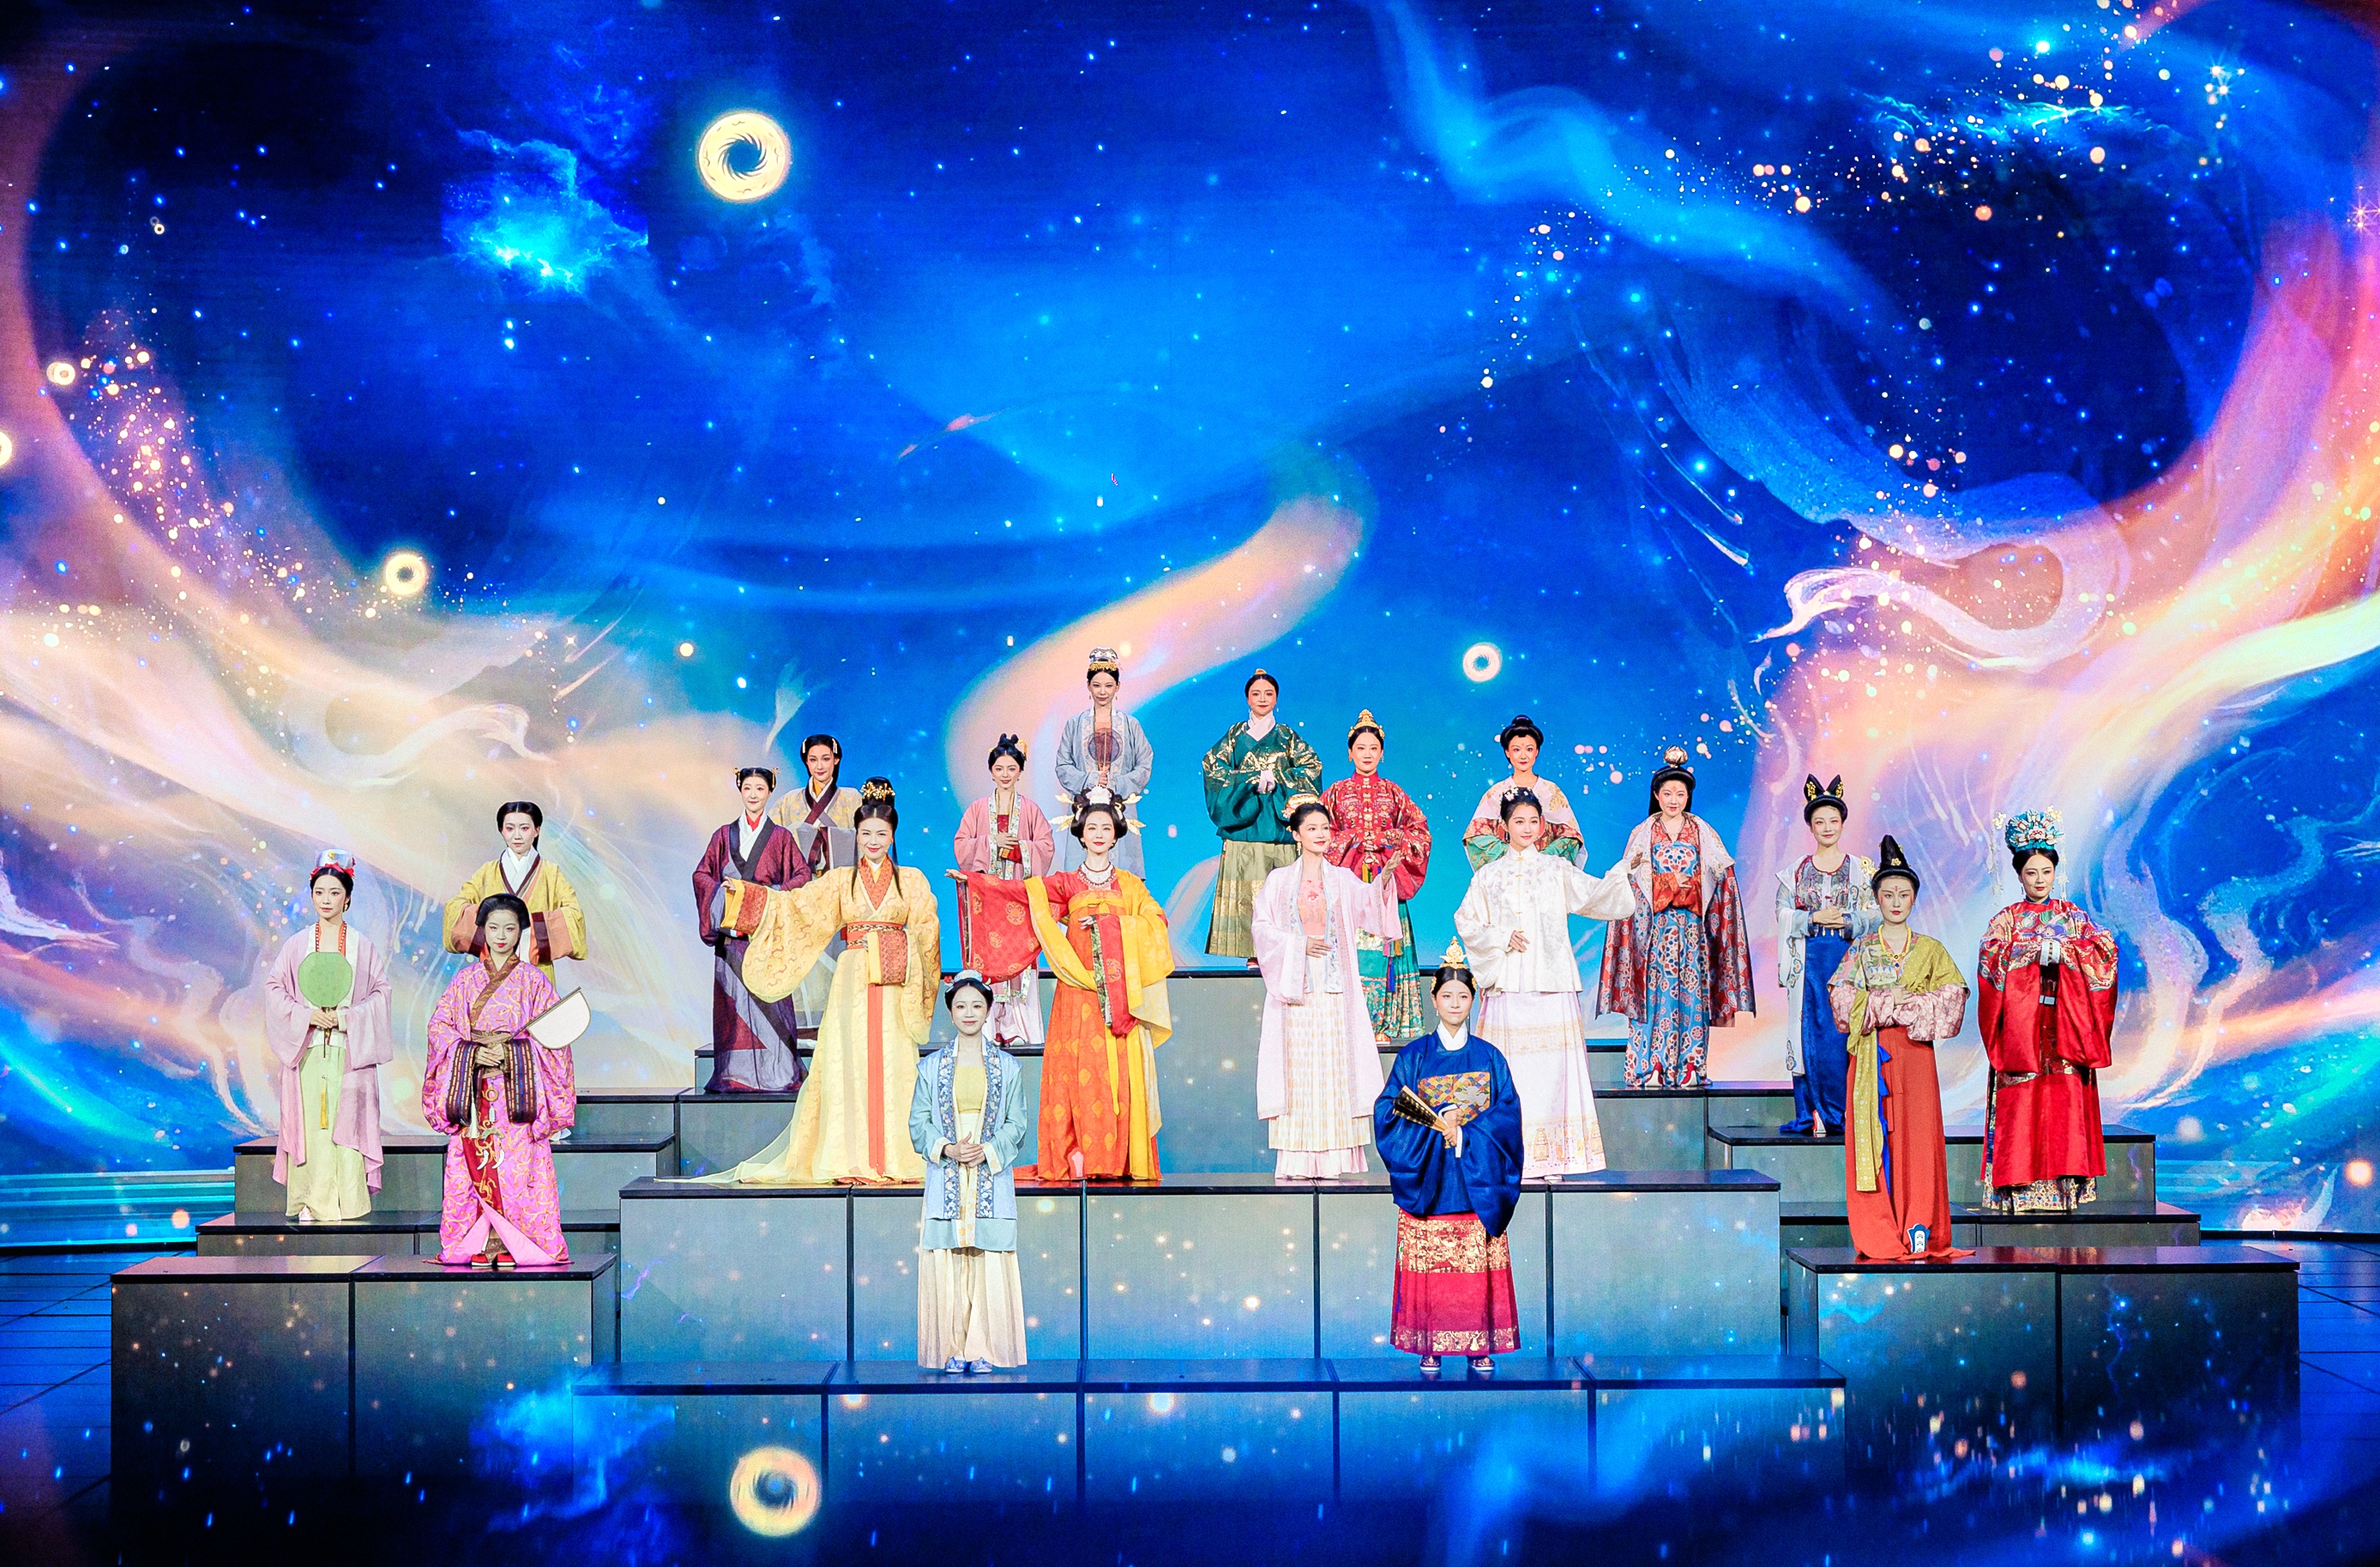 اجرای پنجمین تمرین شب نشینی عید بهار رادیو و تلویزیون مرکزی چینا